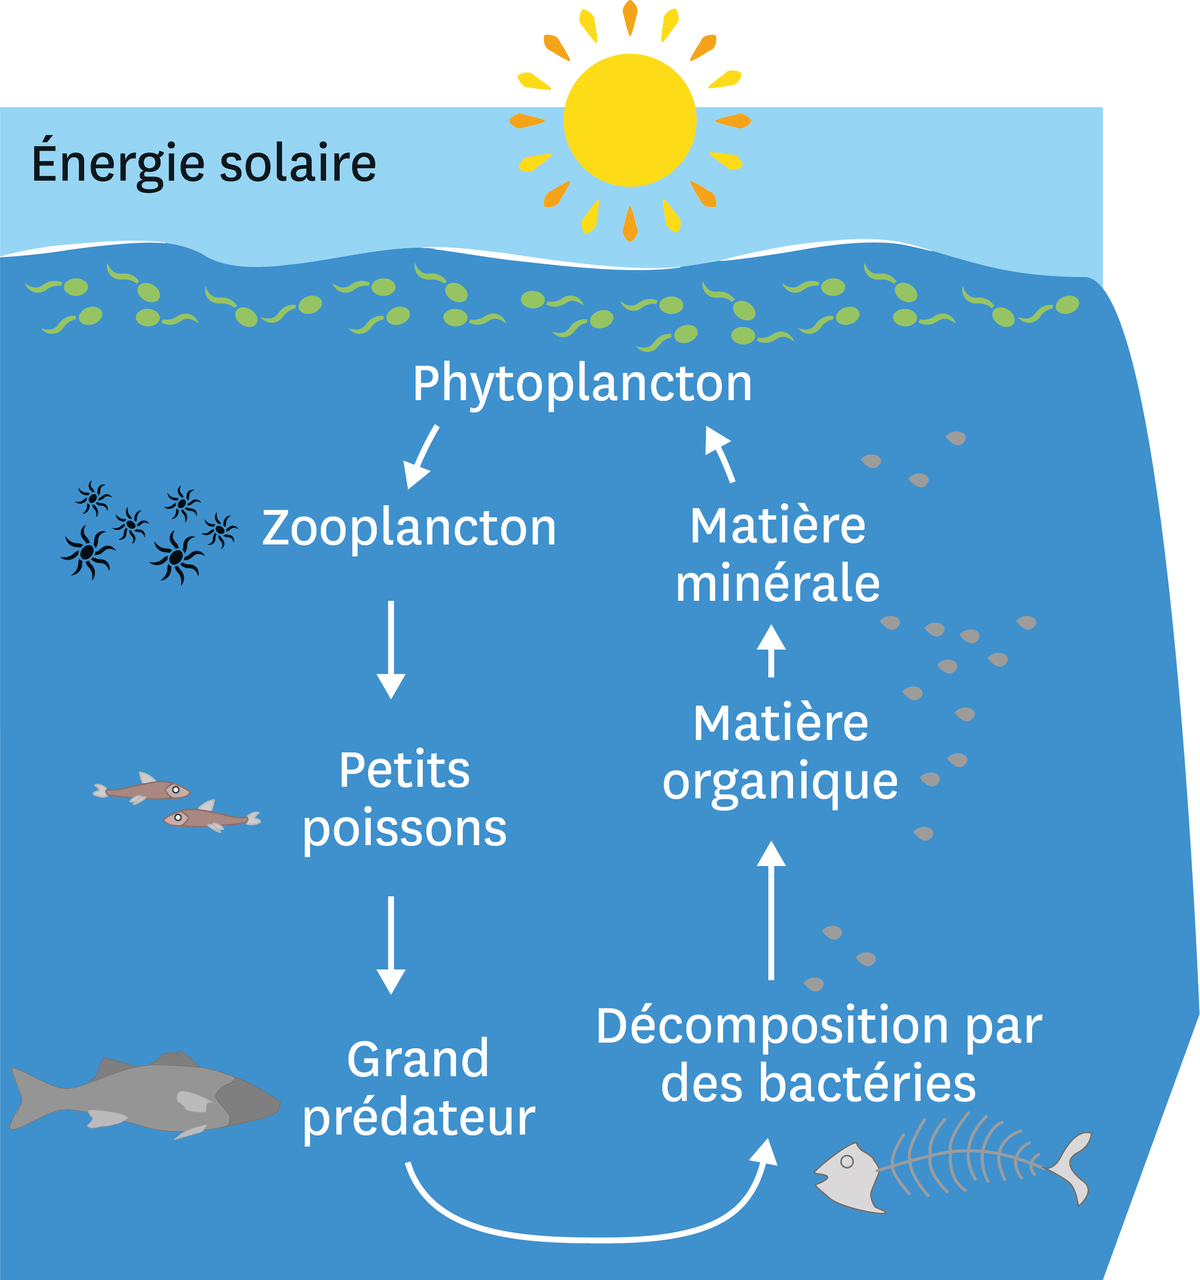 Le fonctionnement simplifié de l'écosystème océanique : les grands le phytoplancton à la surface vit grâce à l'énergie solaire, puis il est mangé par le zooplancton qui est mangé par les petits poissons qui sont mangés par le grand prédateur. A sa mort, le grand prédateur se décompose grâce à des des bactéries, ce qui crée de la matière organique puis de la matière minérale qui permet de nourrir le phytoplancton.